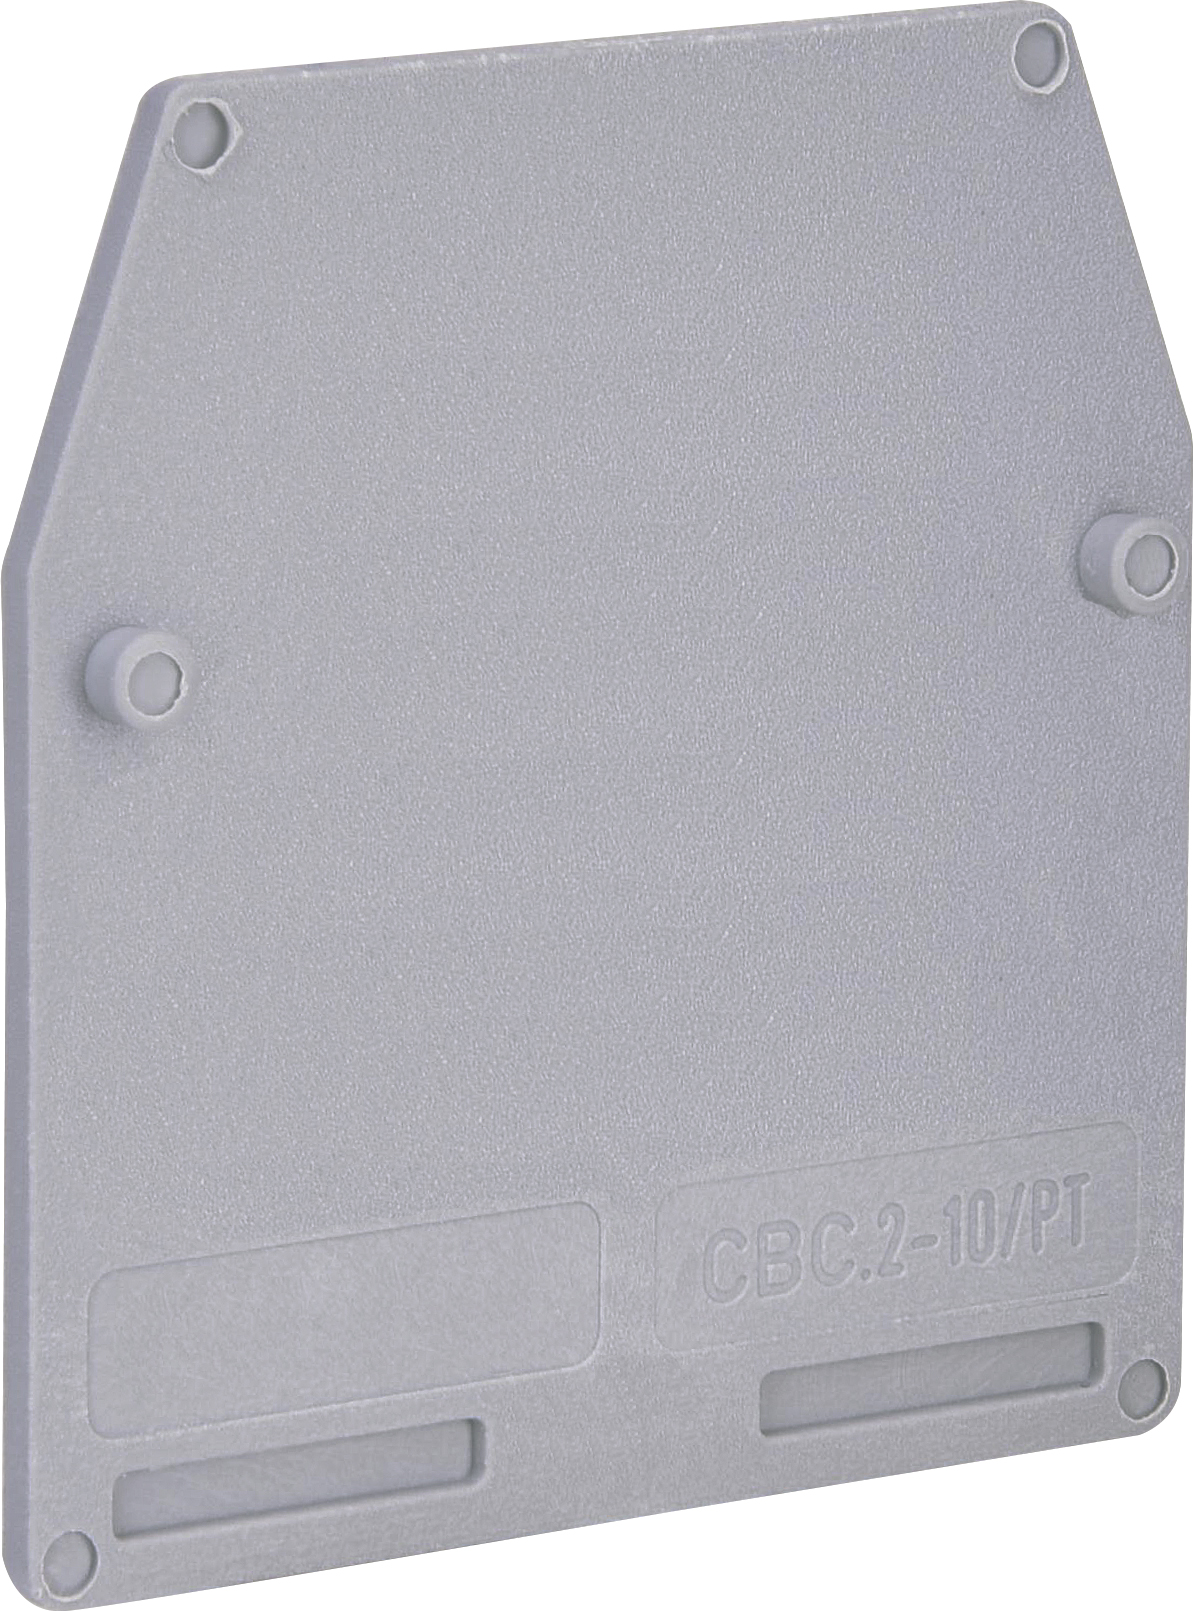 Замыкающая крышка для клемм ETI ESC-CBC.2-10/PT (003903010) в интернет-магазине, главное фото